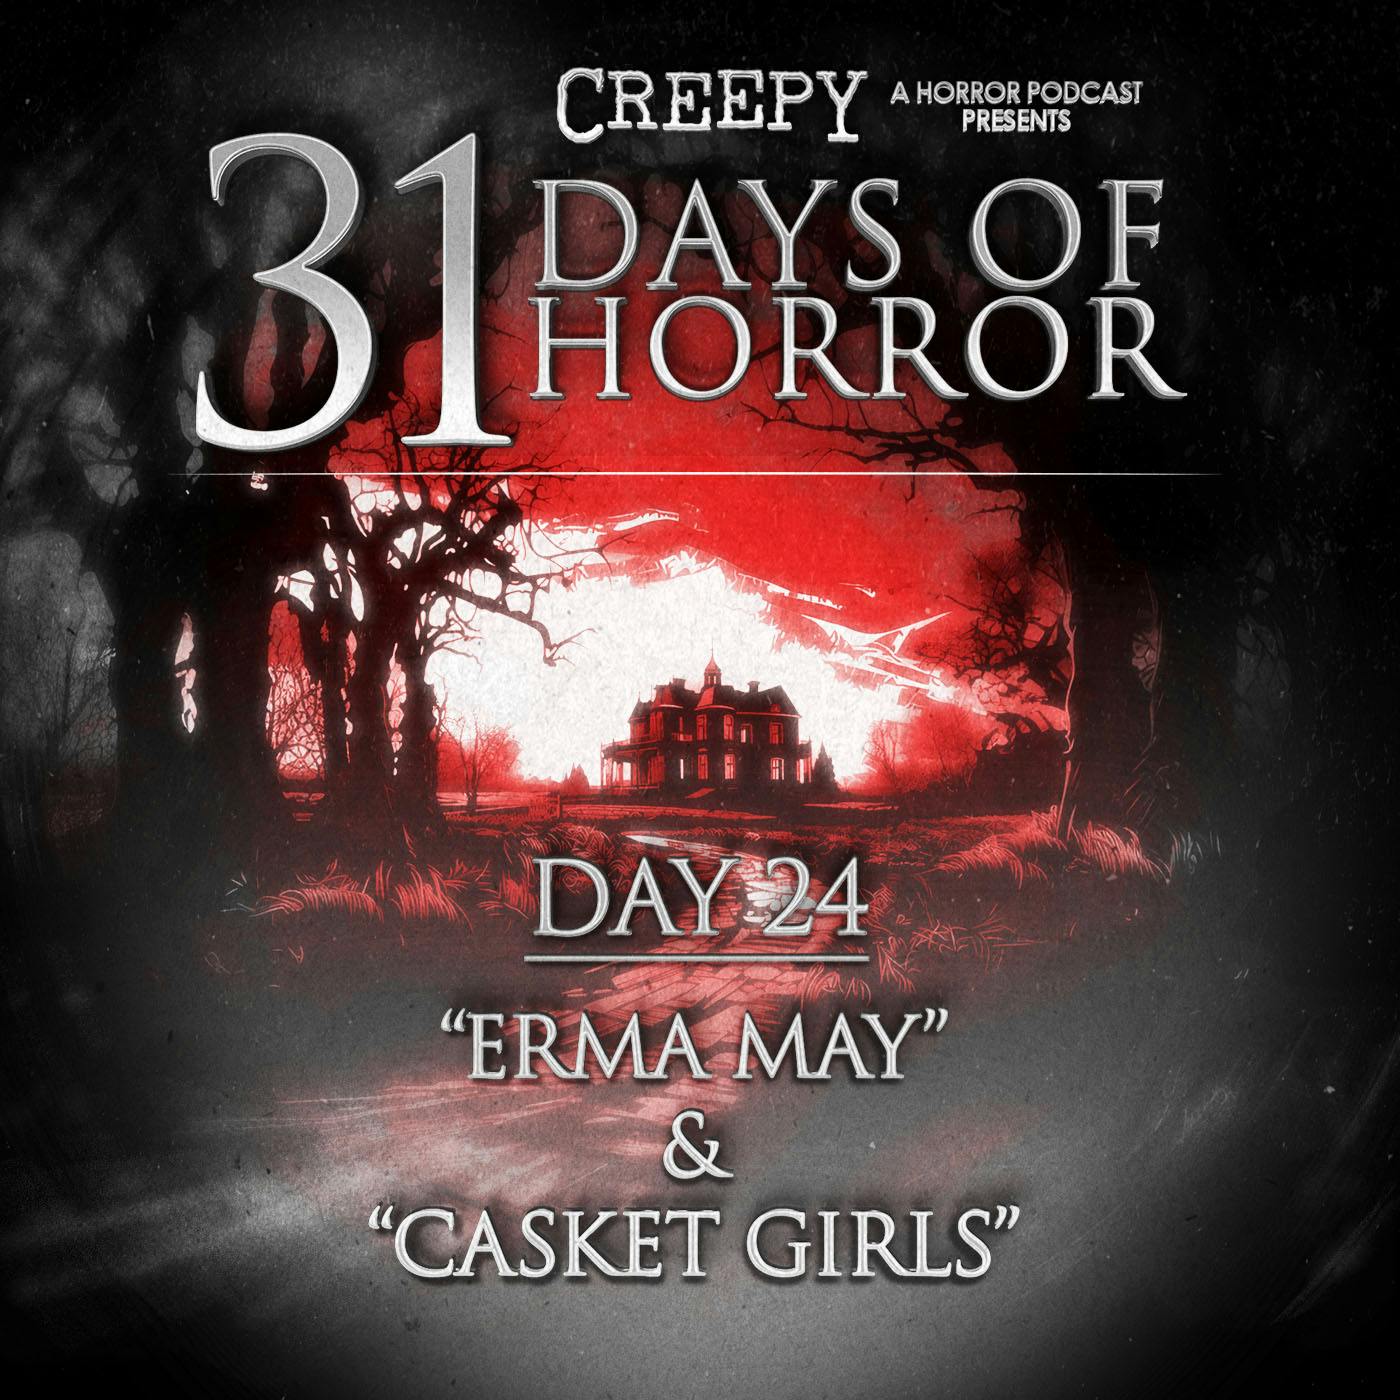 Day 24 - Erma May & Casket Girls